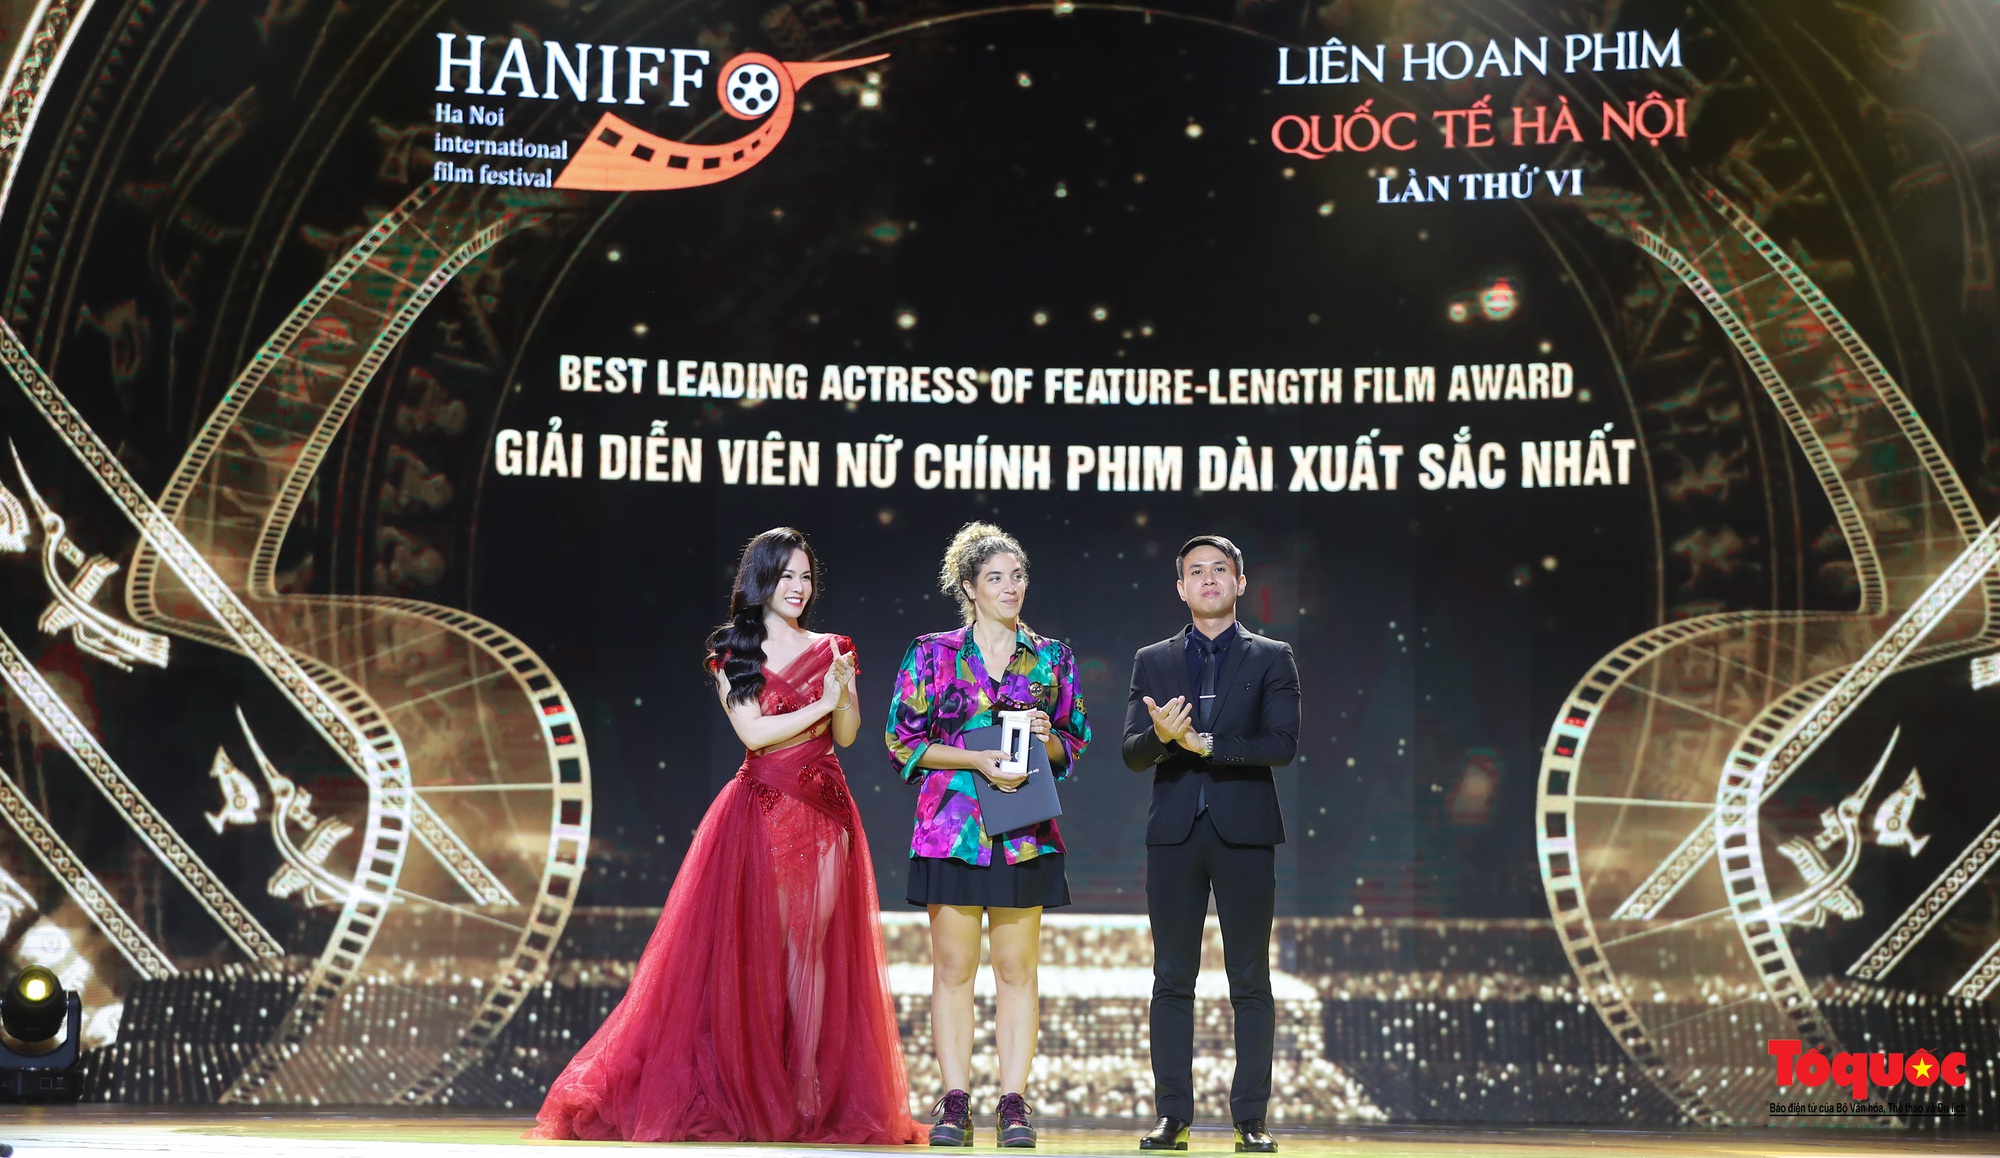 Bế mạc HANIFF 2022: 12 hàng mục giải thưởng trao cho các bộ phim, diễn viên, đạo diễn xuất sắc - Ảnh 11.